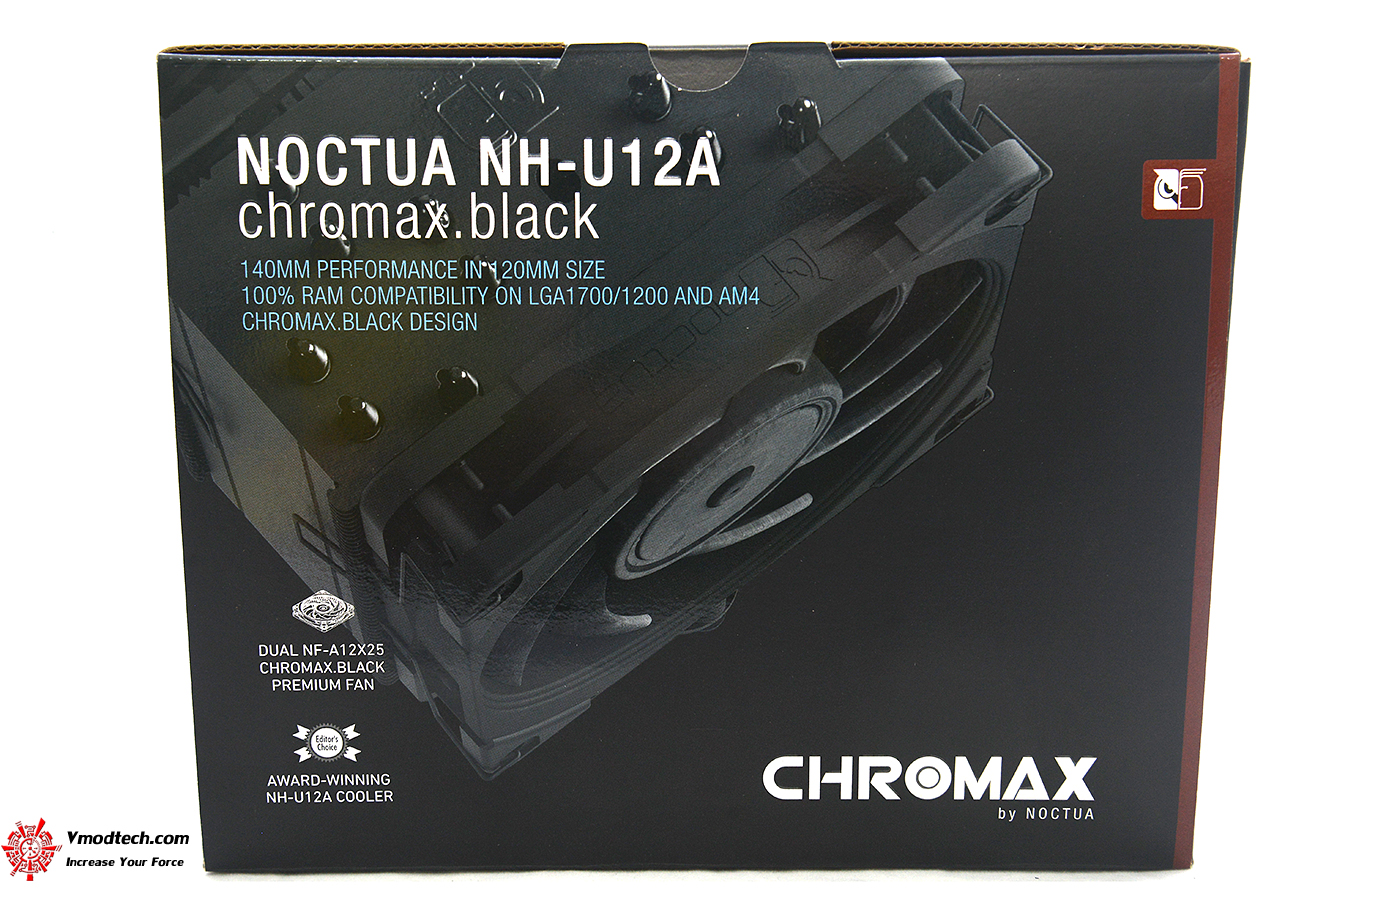 dsc 9724 NOCTUA NH U12A LGA 1700 chromax.black CPU cooler Review